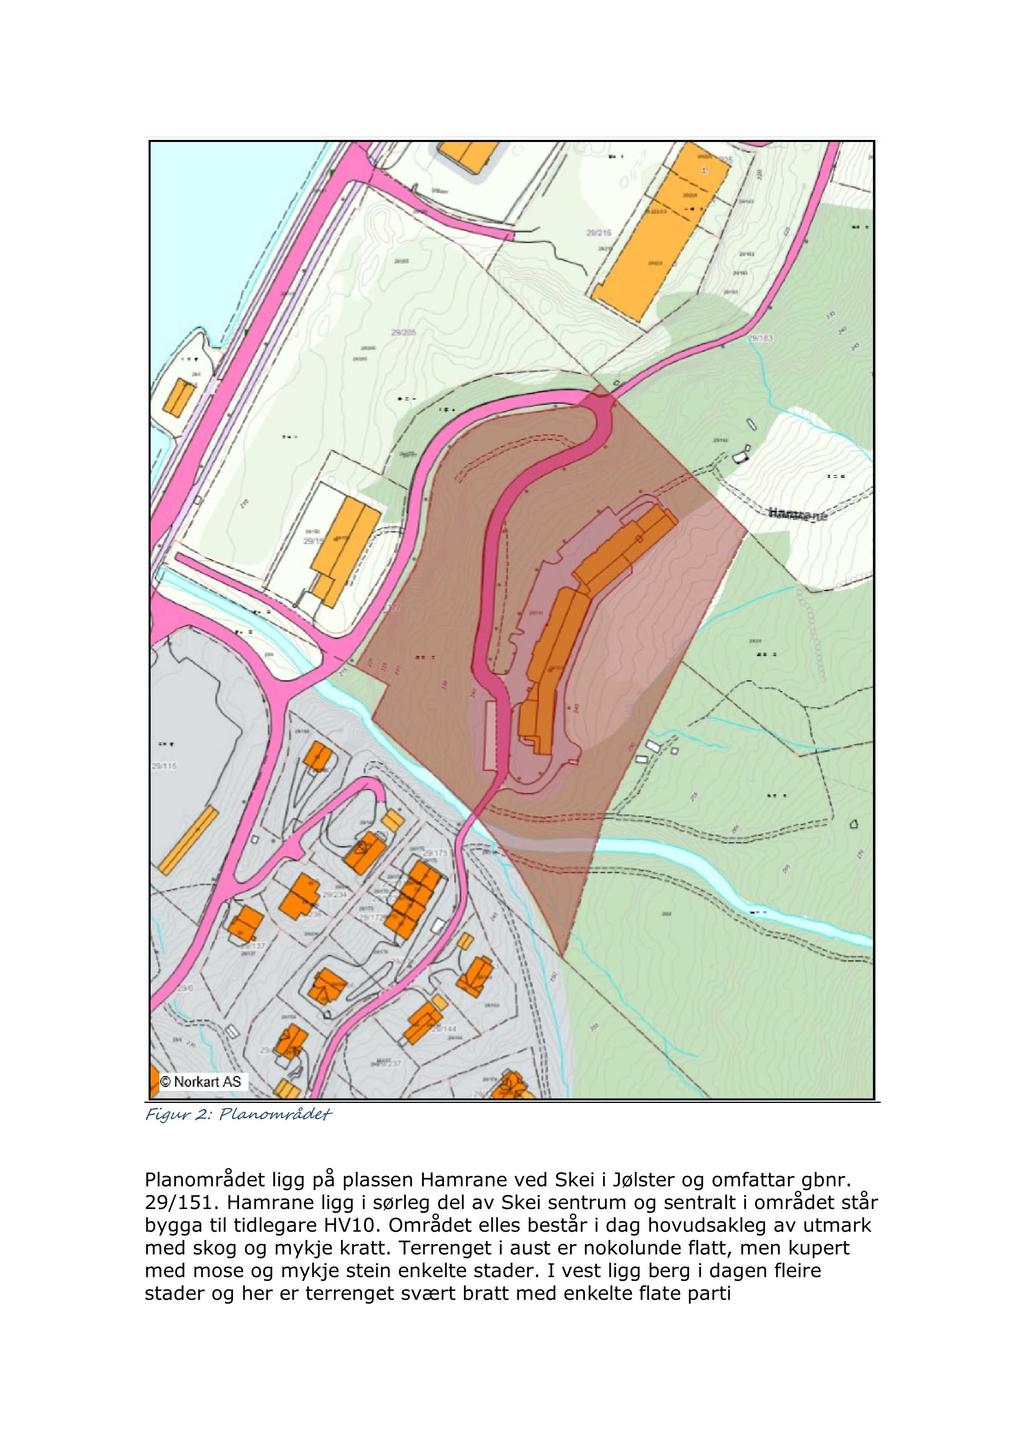 Figur 2 : Planområdet Planområdet ligg på plassen Hamrane ved Skei i Jølster og omfattar gbnr. 29/151. Hamrane ligg i sørleg del av Skei sentrum og sentralt i området står bygga til tidlegare HV10.